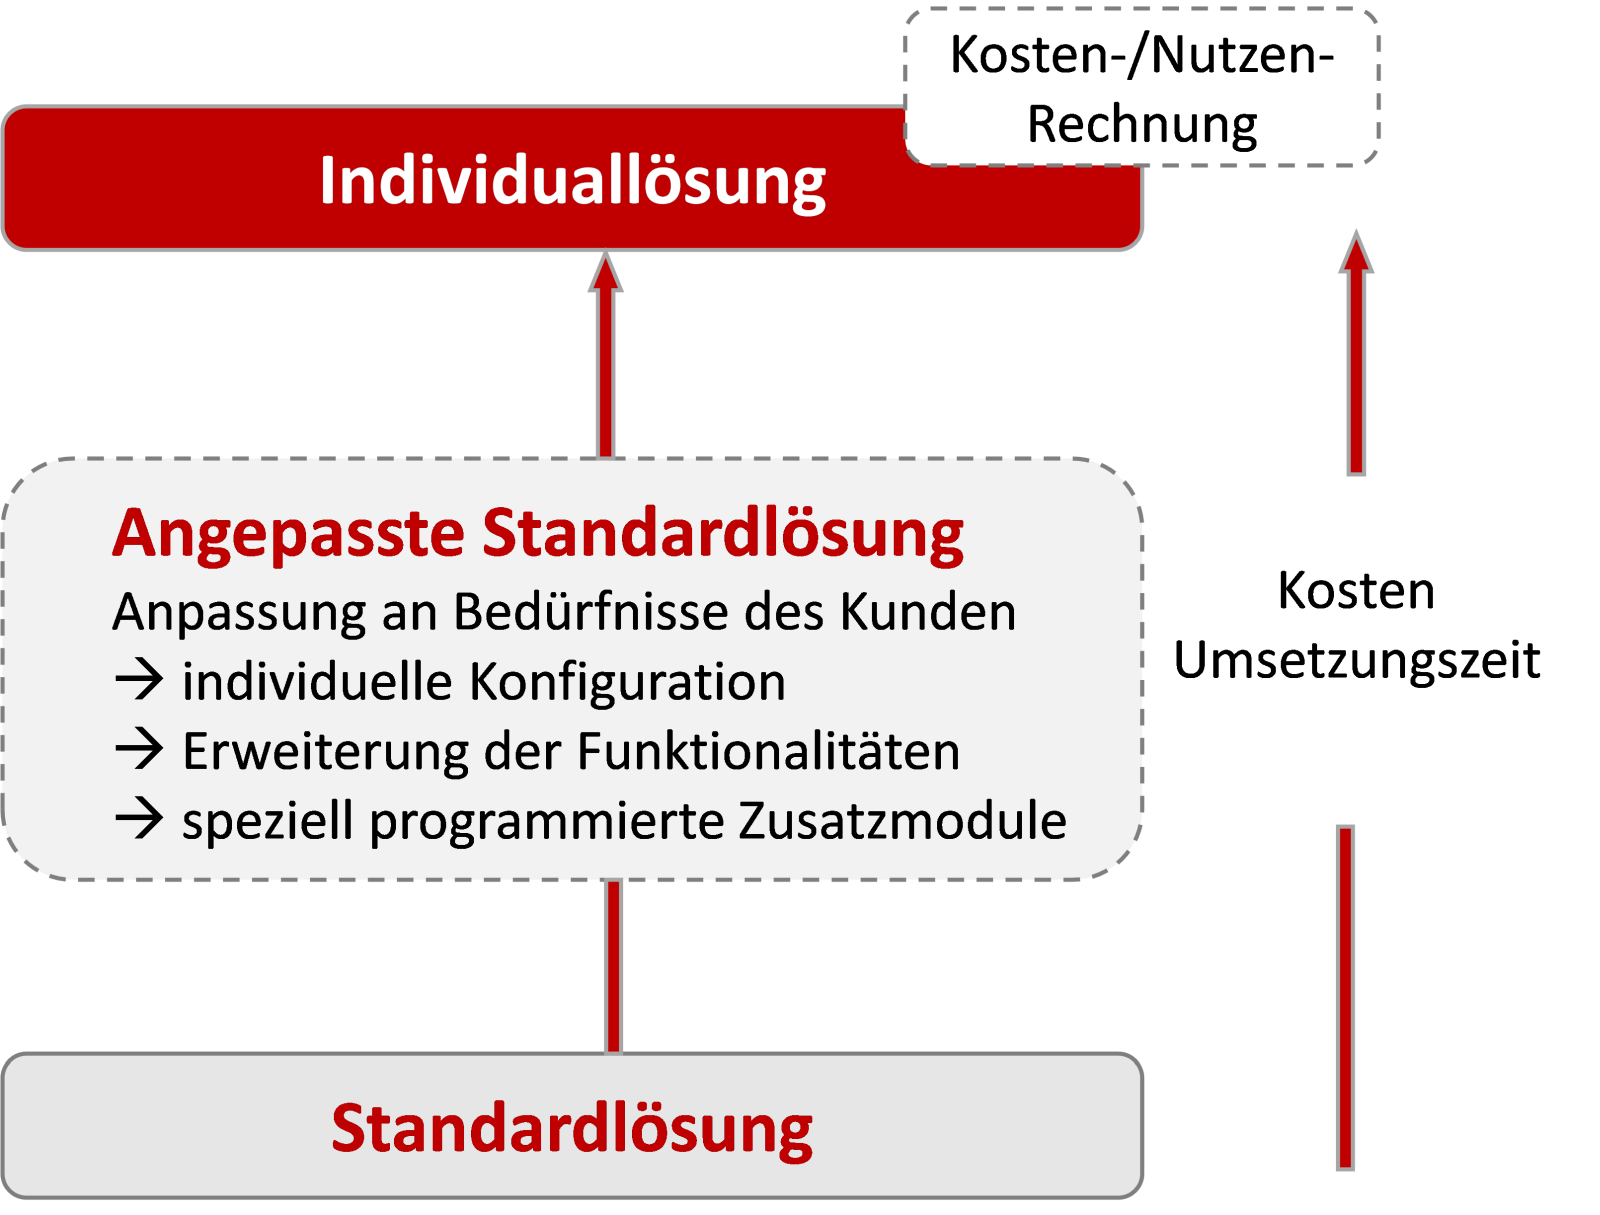 Auswahl eines Zeiterfassungssystems – Standardlösung vs. angepasste Standardlösung vs. Individuallösung